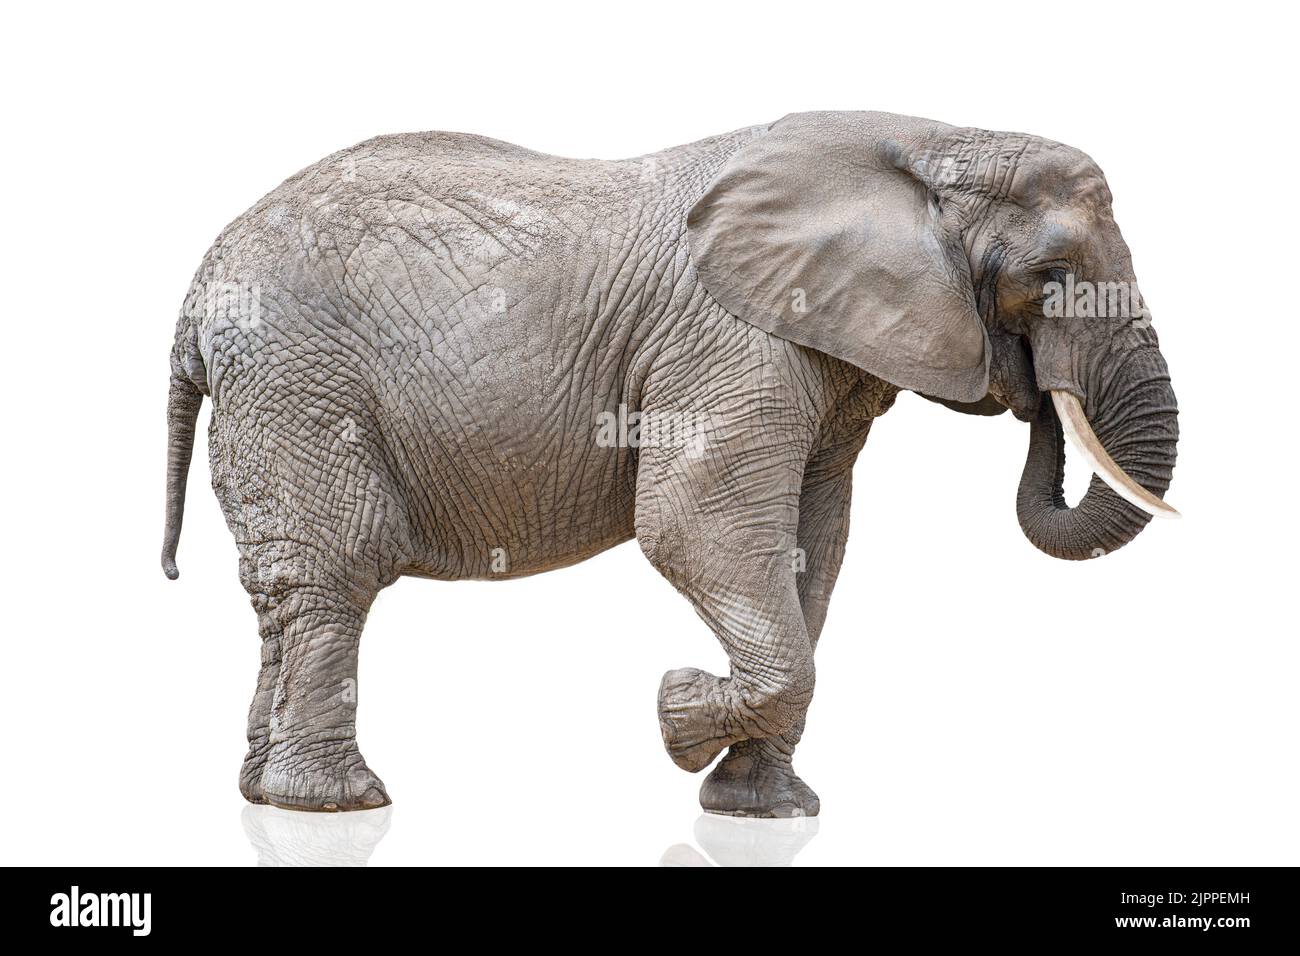 Elefante a piedi isolato su bianco. Elefante africano isolato su sfondo bianco uniforme. Foto di un elefante in primo piano, vista laterale. Foto Stock